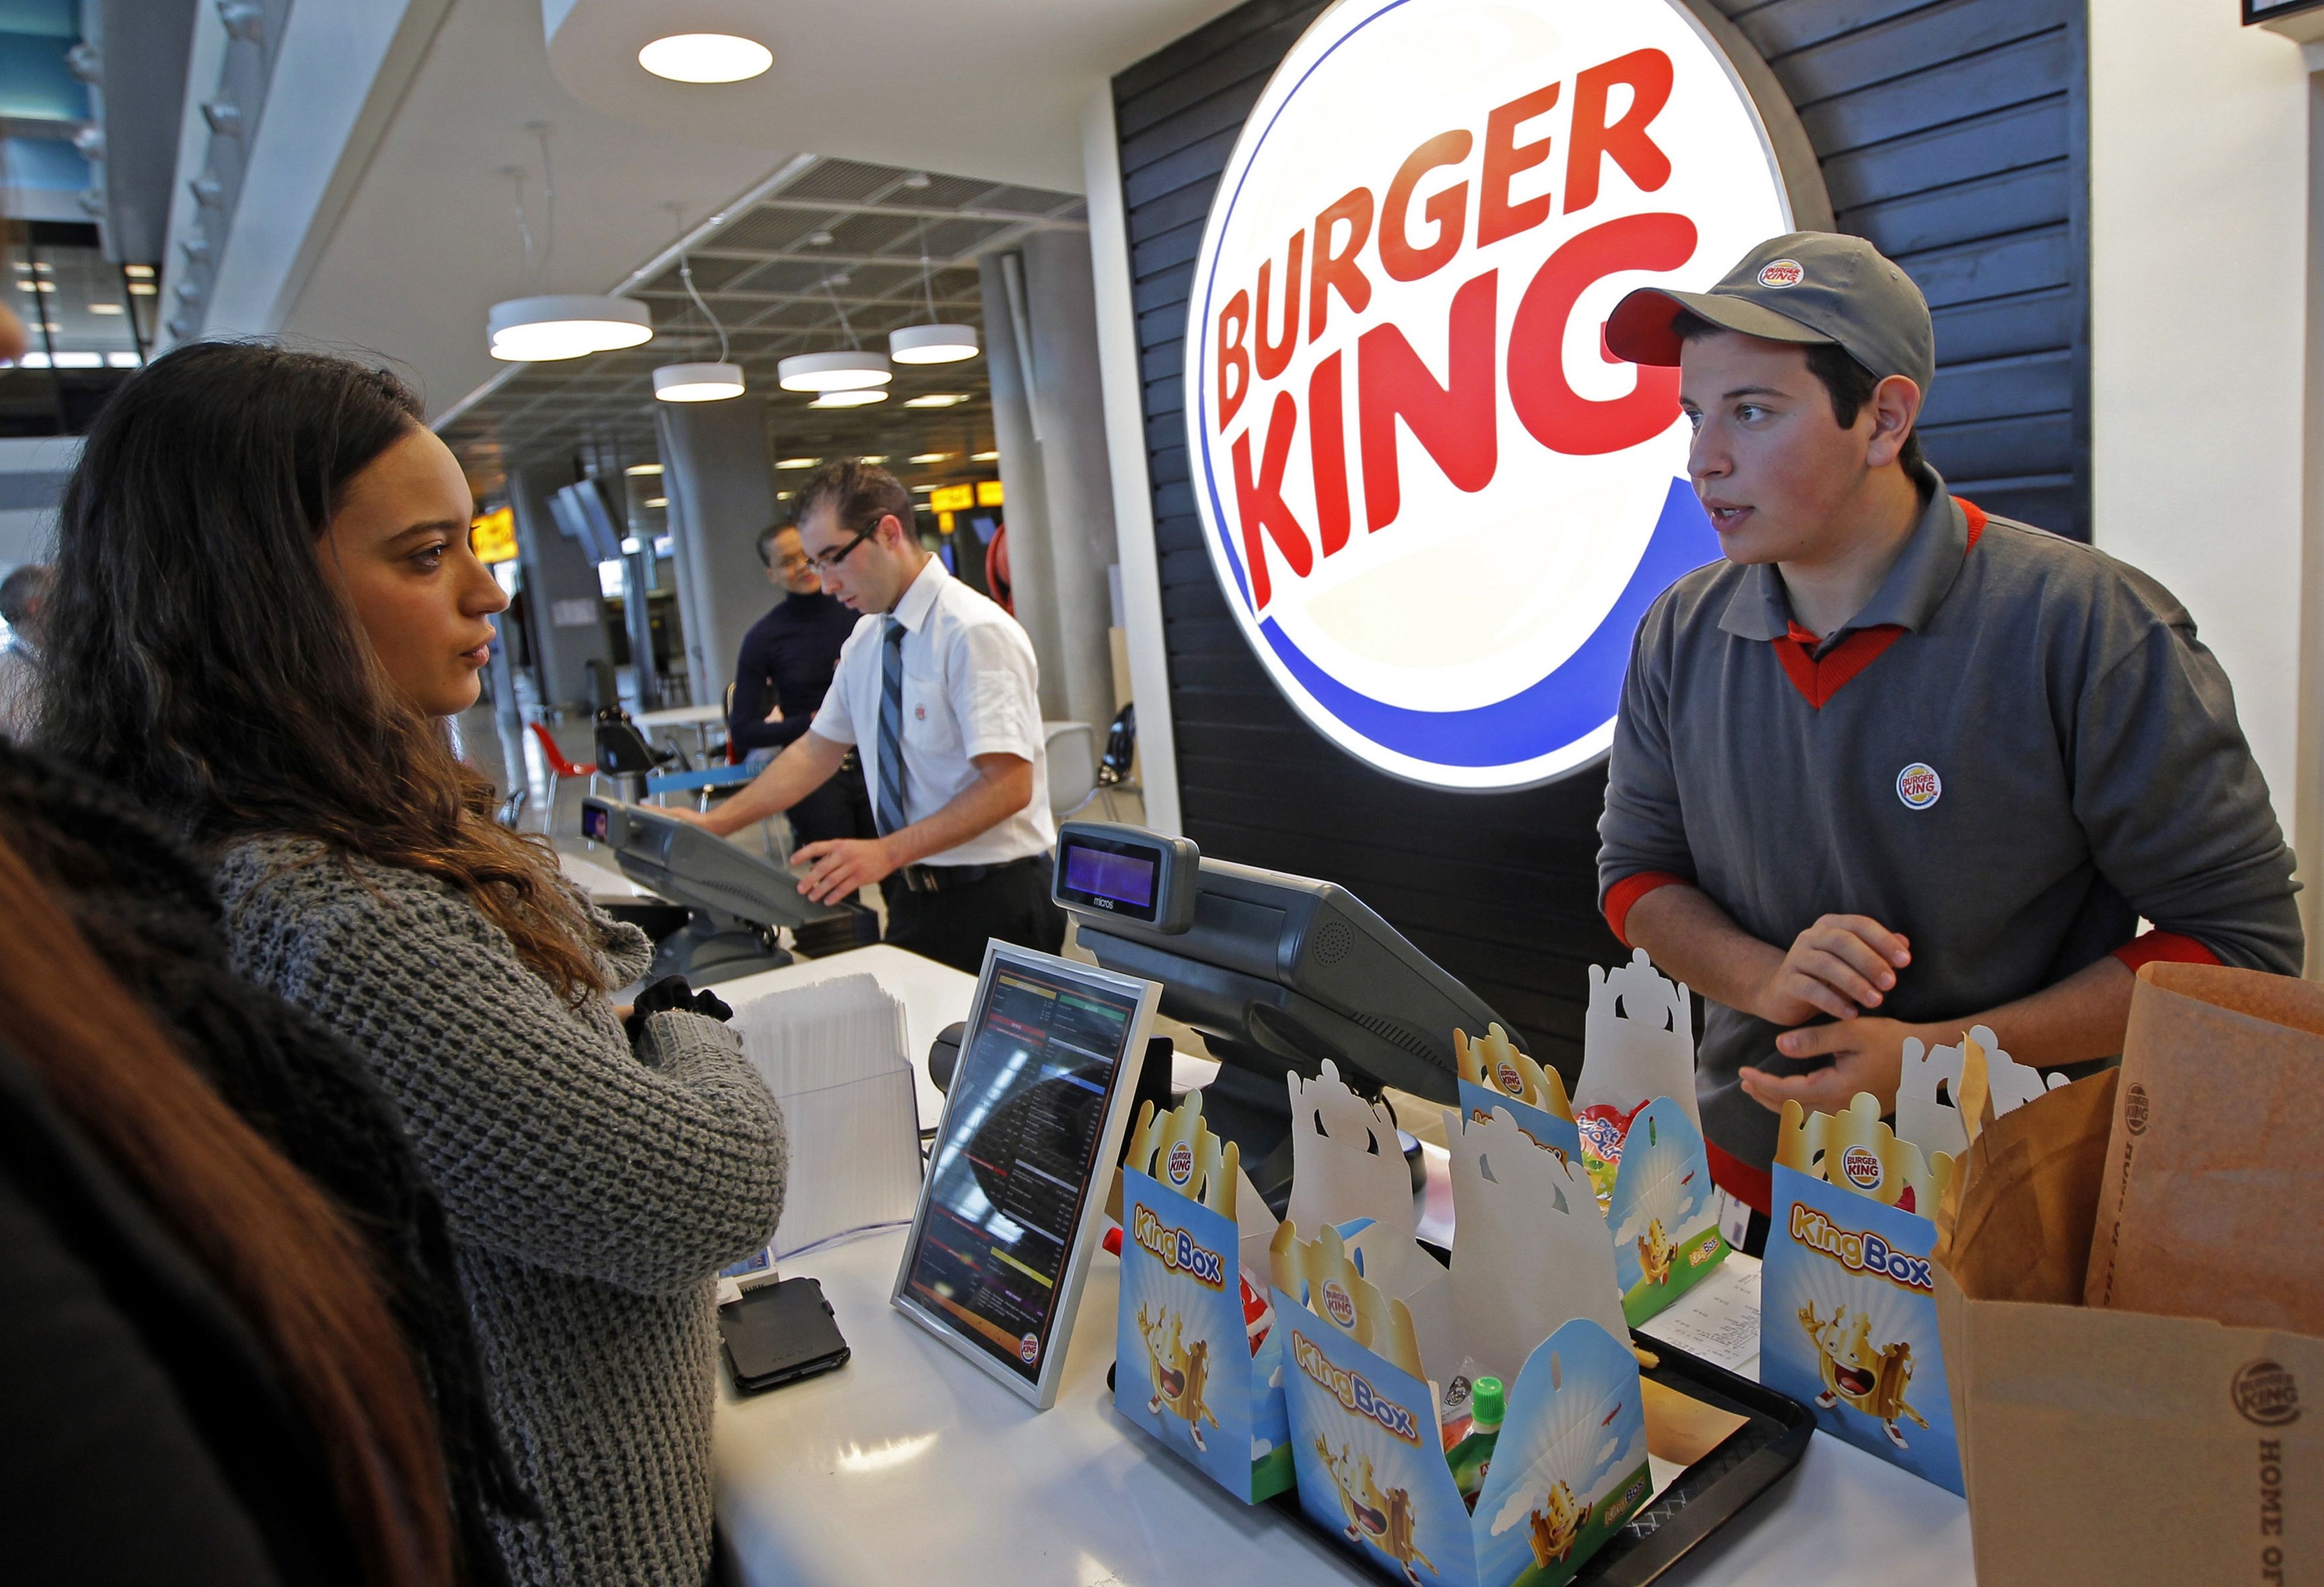 Empleado Burger King